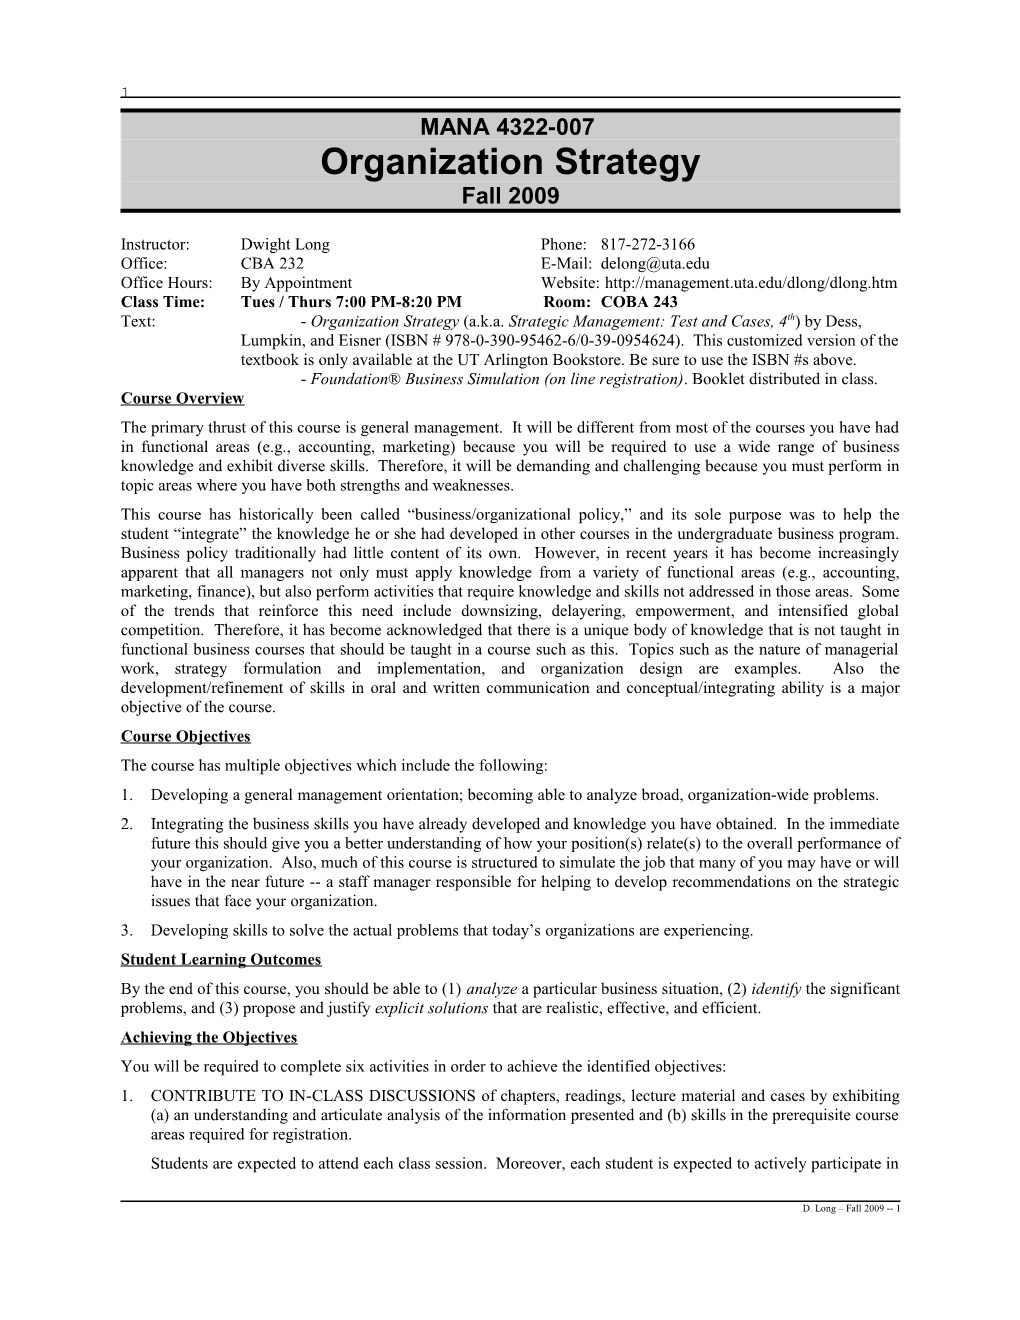 Organization Strategy